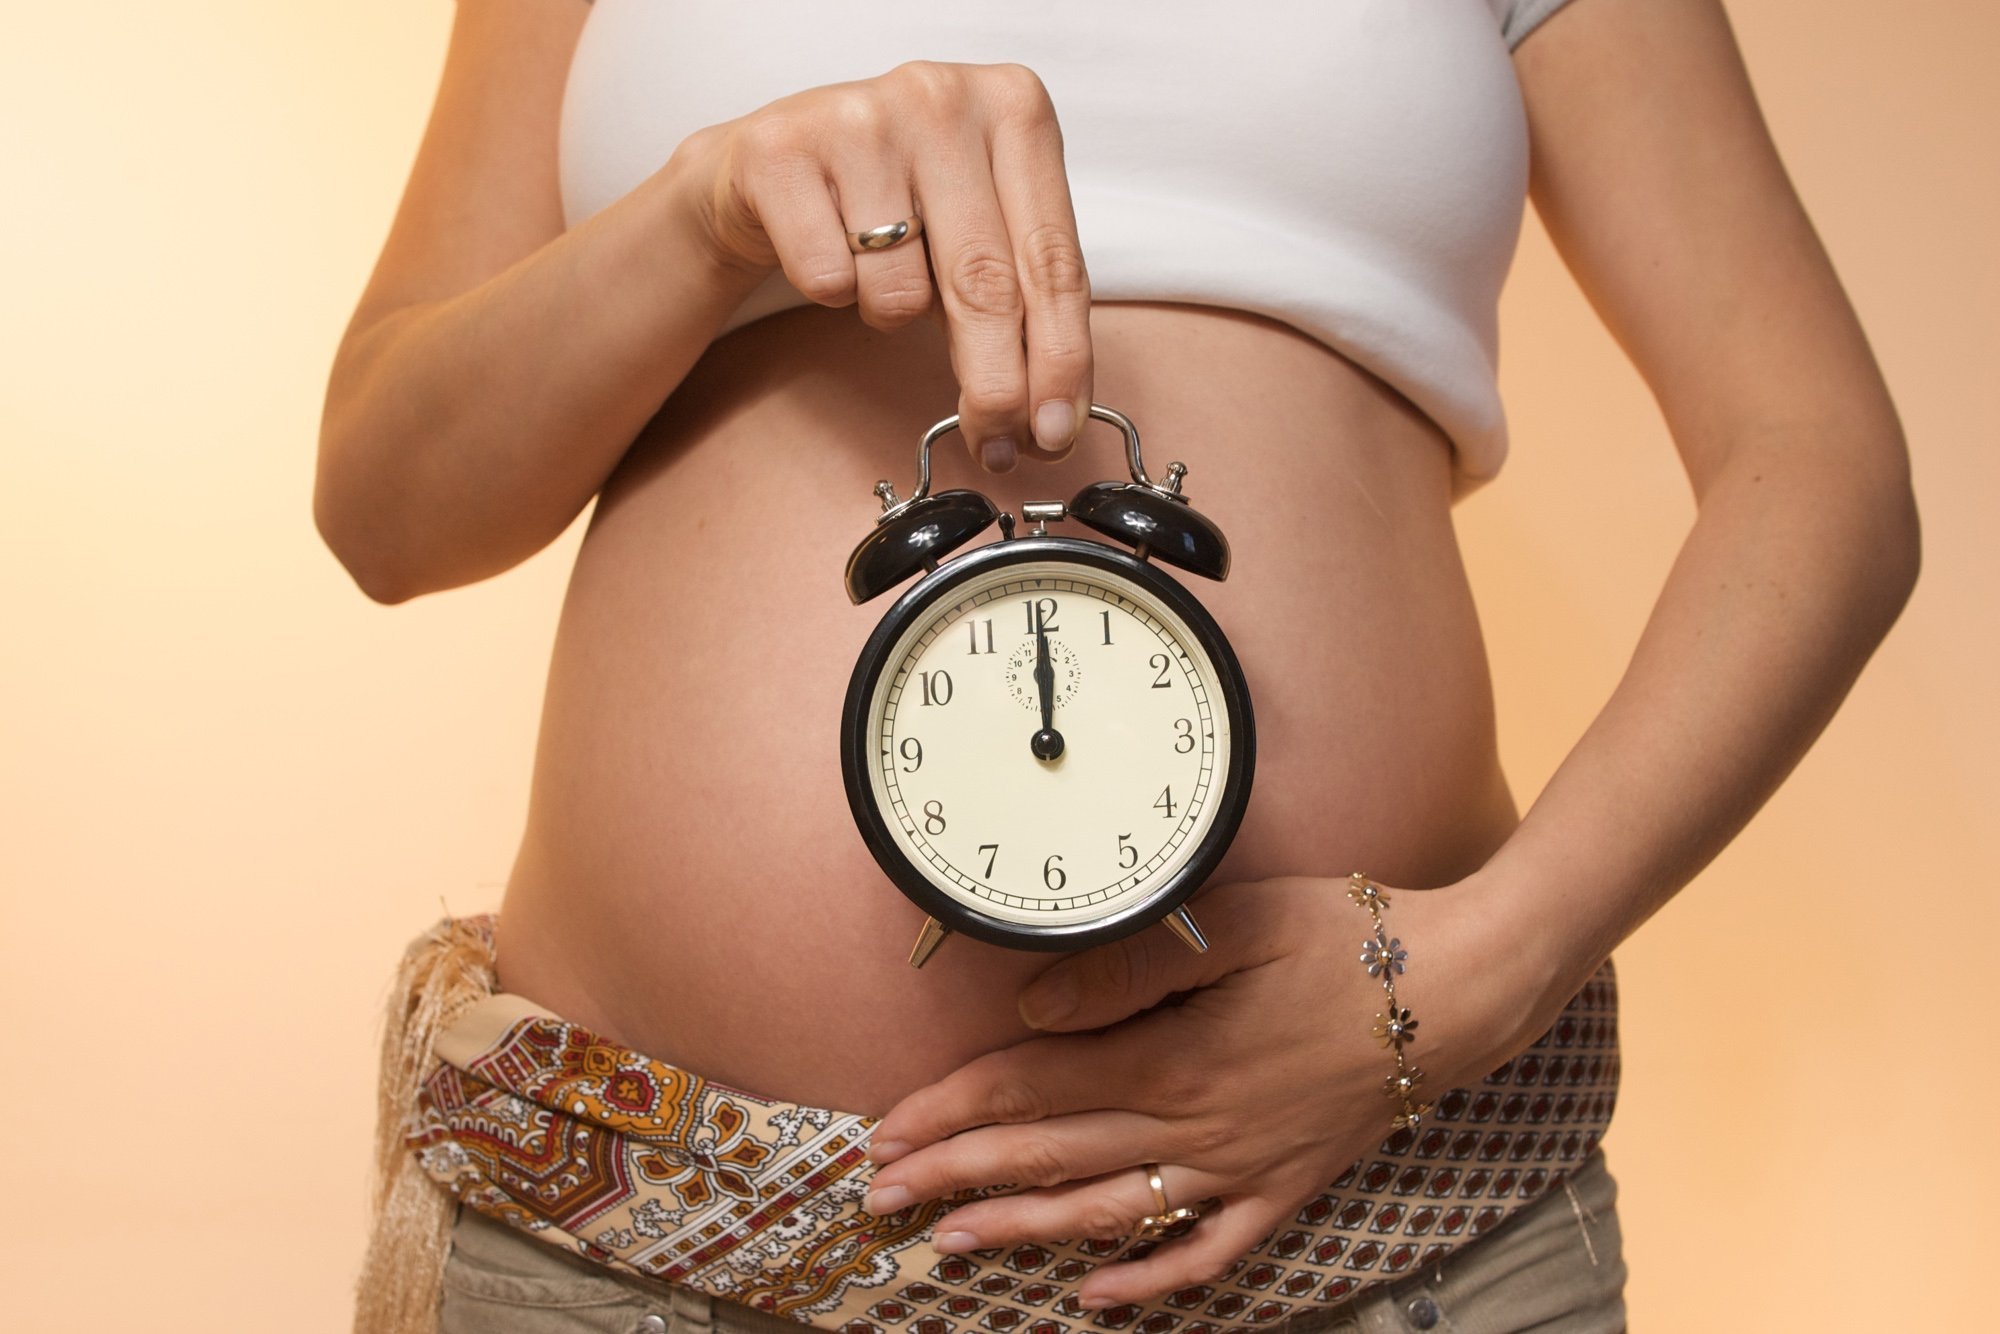 26 неделя схватки. Картинки беременных женщин. Беременный живот и часы.